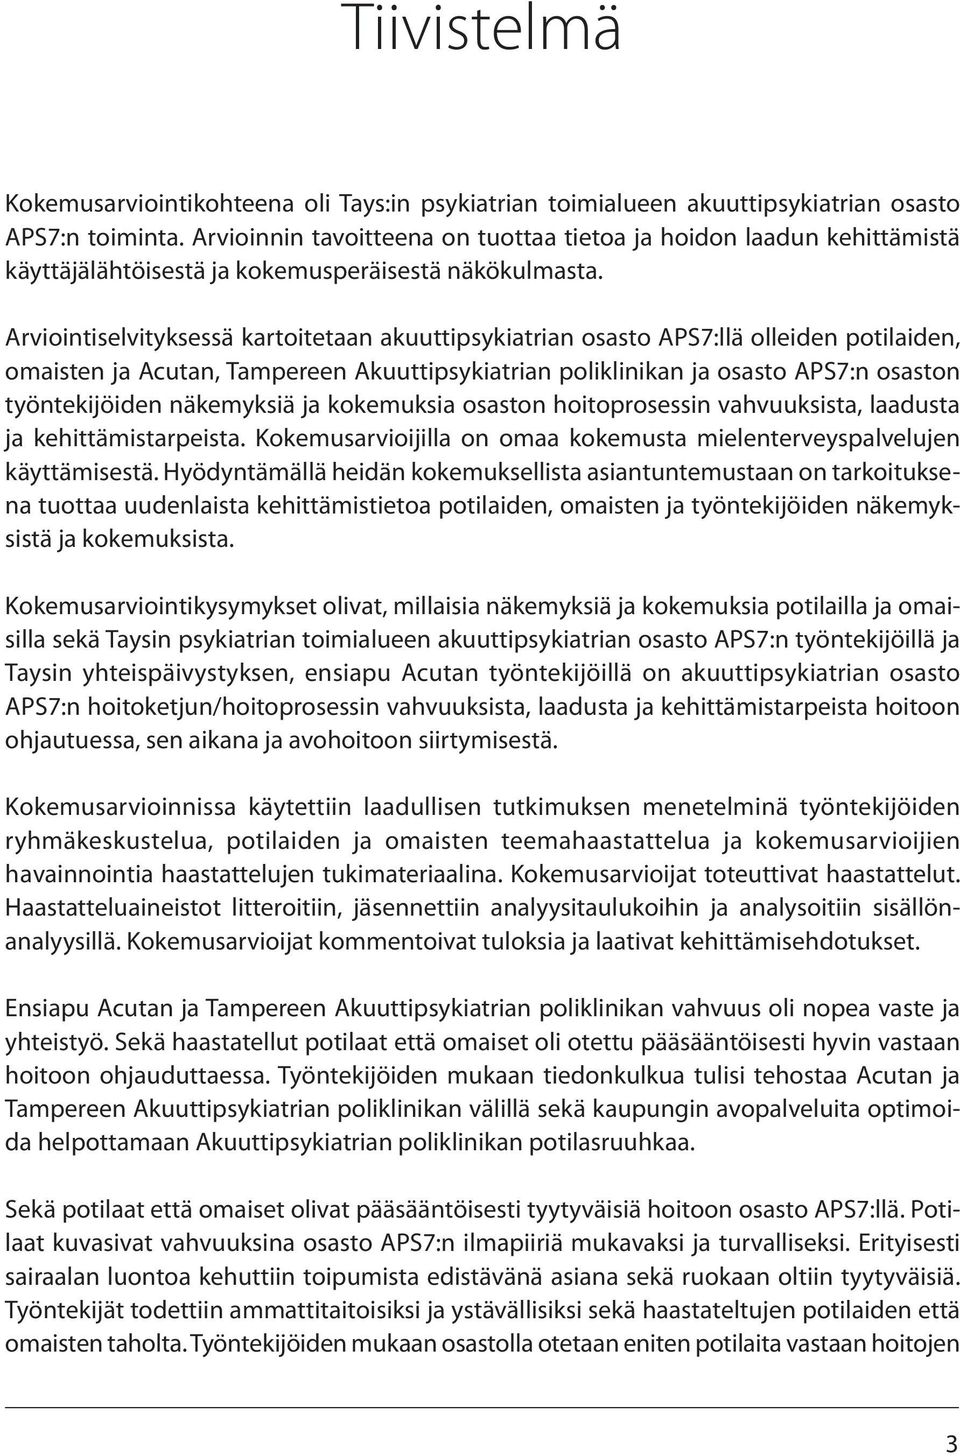 Arviointiselvityksessä kartoitetaan akuuttipsykiatrian osasto APS7:llä olleiden potilaiden, omaisten ja Acutan, Tampereen Akuuttipsykiatrian poliklinikan ja osasto APS7:n osaston työntekijöiden